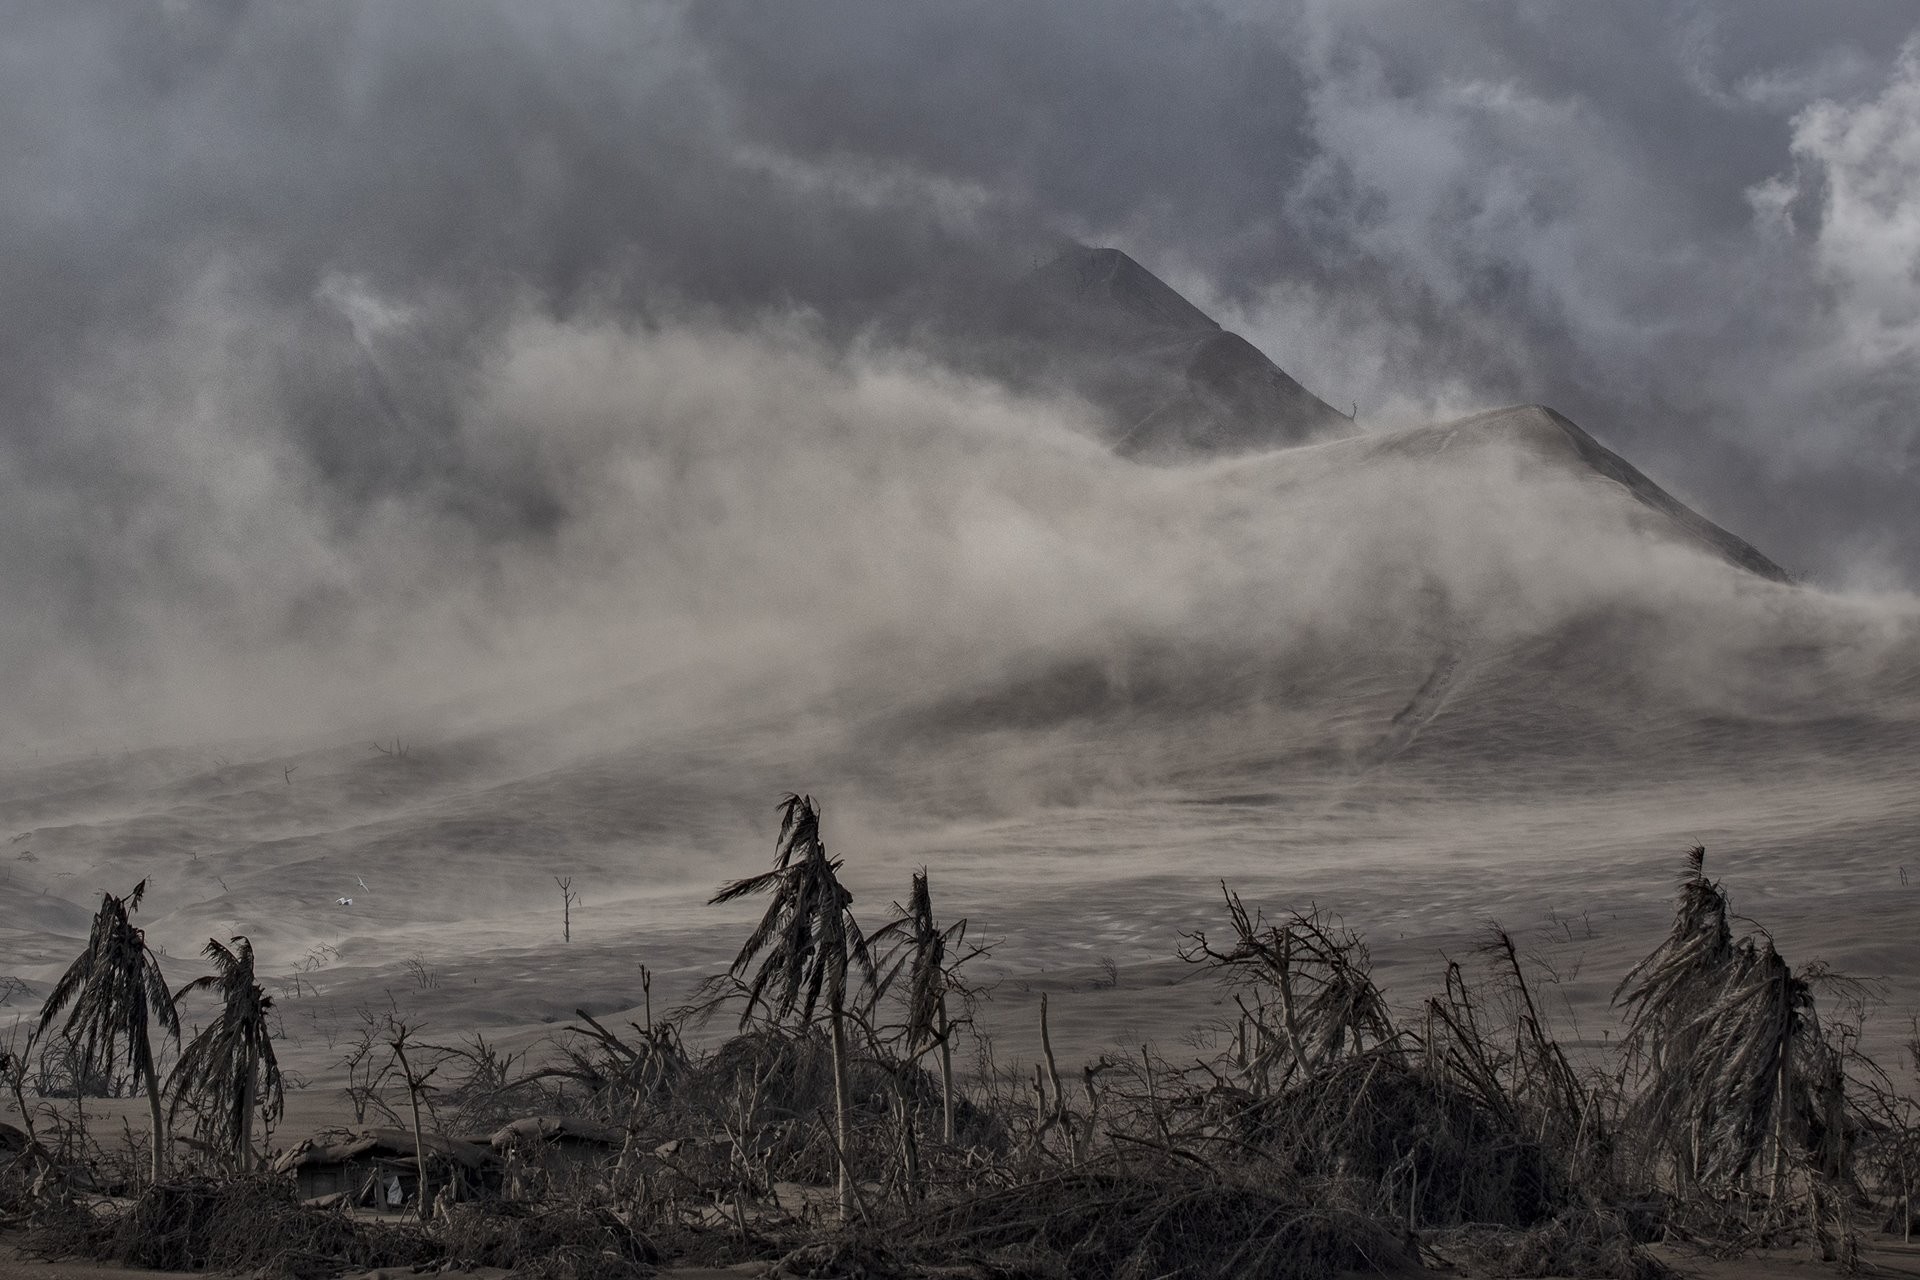 2 место в категории Природа, серия, 2021. Извержение вулкана Тааль на Филиппинах, 14 января 2020 года. Автор Эзра Акаян